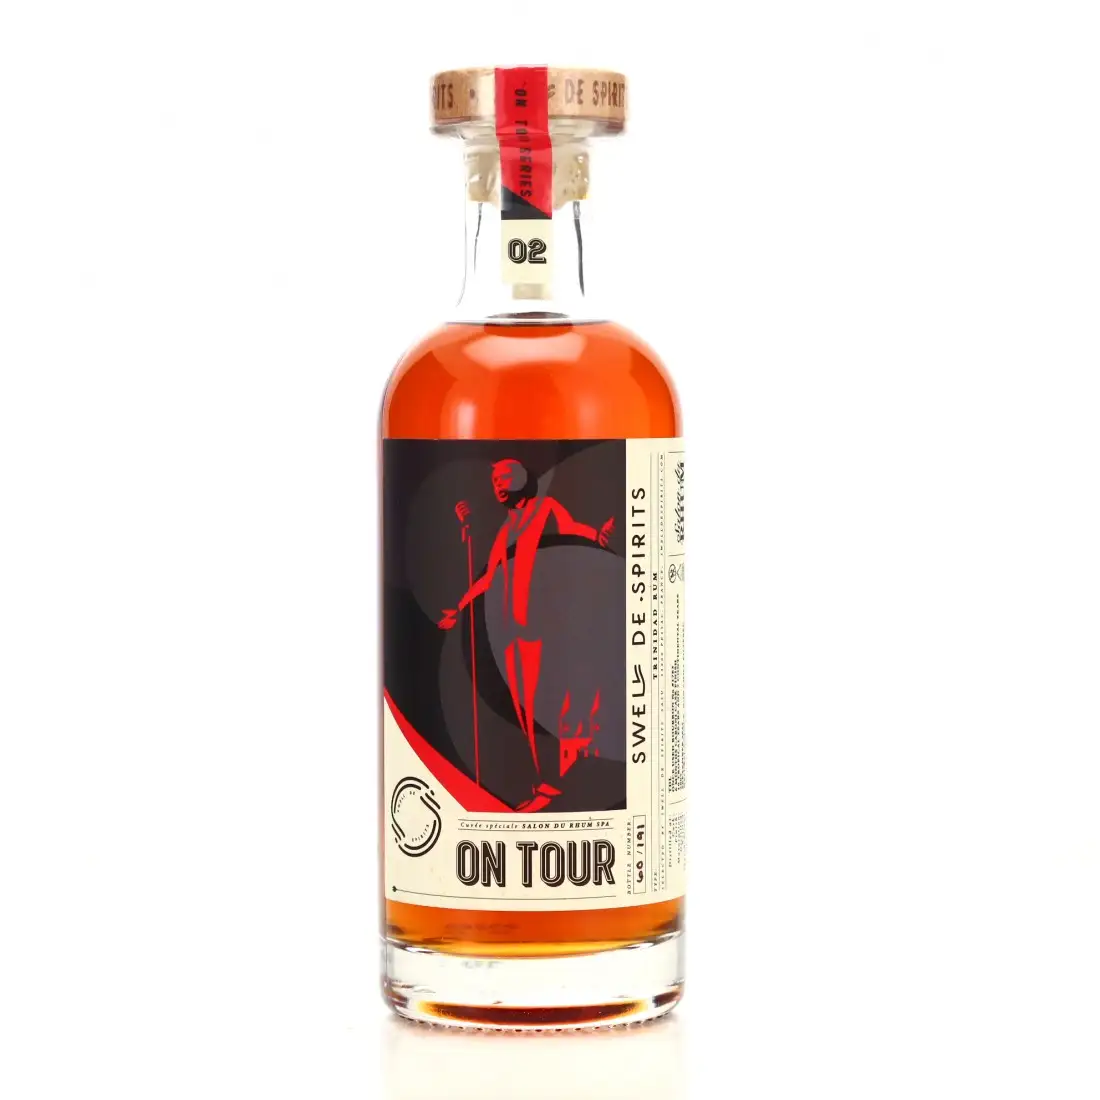 Image of the front of the bottle of the rum On Tour Cuvée Spéciale (Salon du Rhum)